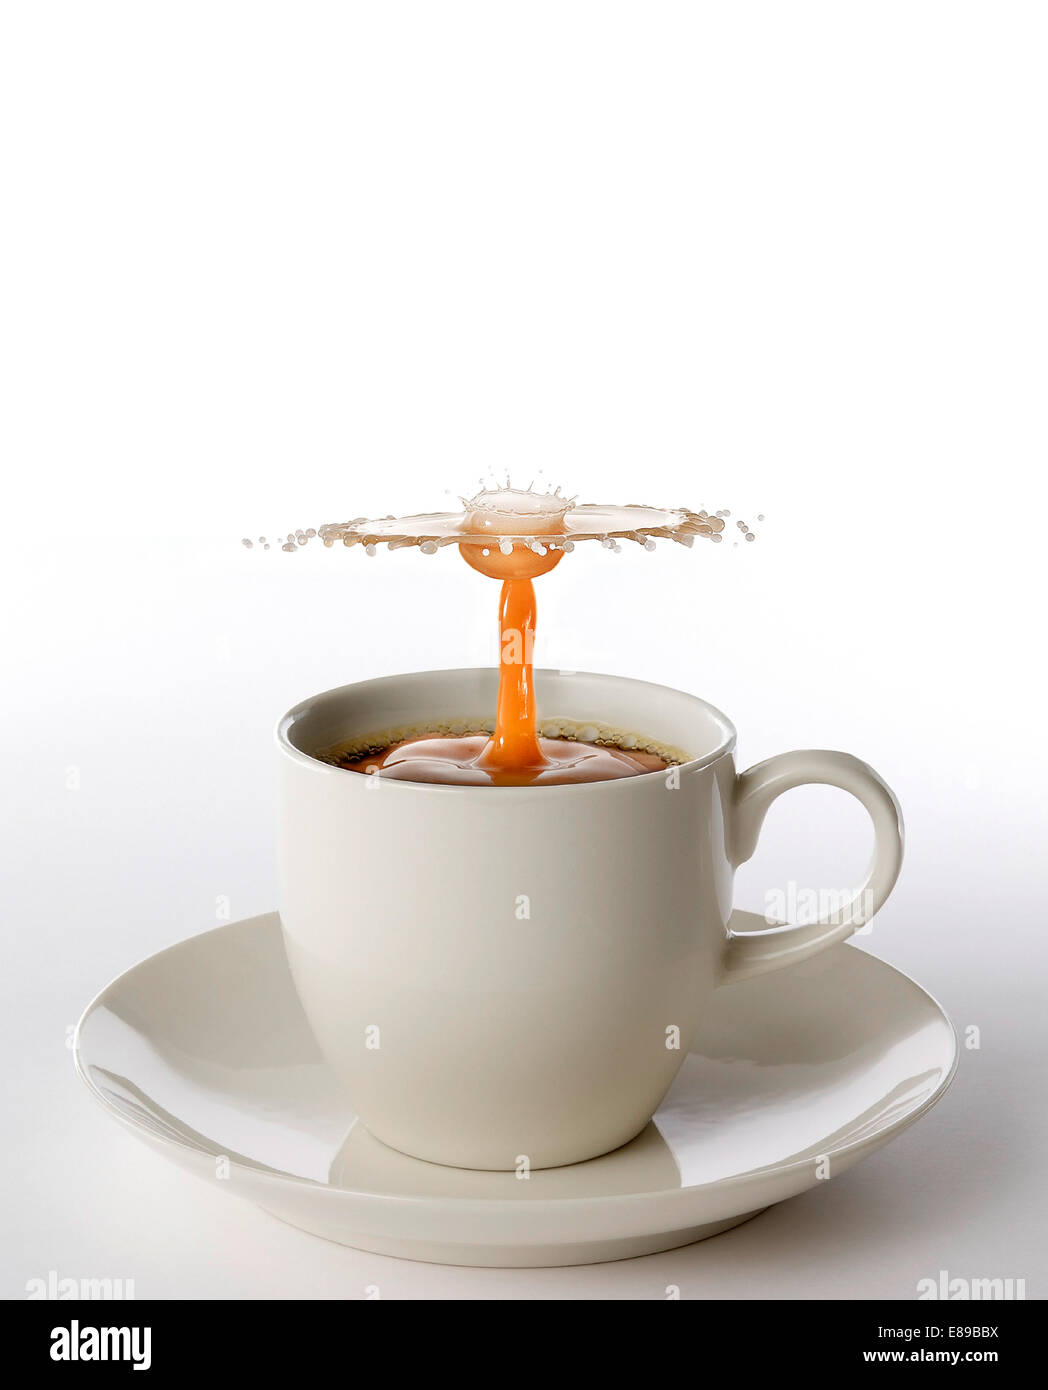 Le café et la crème qui se heurtent dans la tasse de café espresso, créant un design fluide et la forme. Banque D'Images